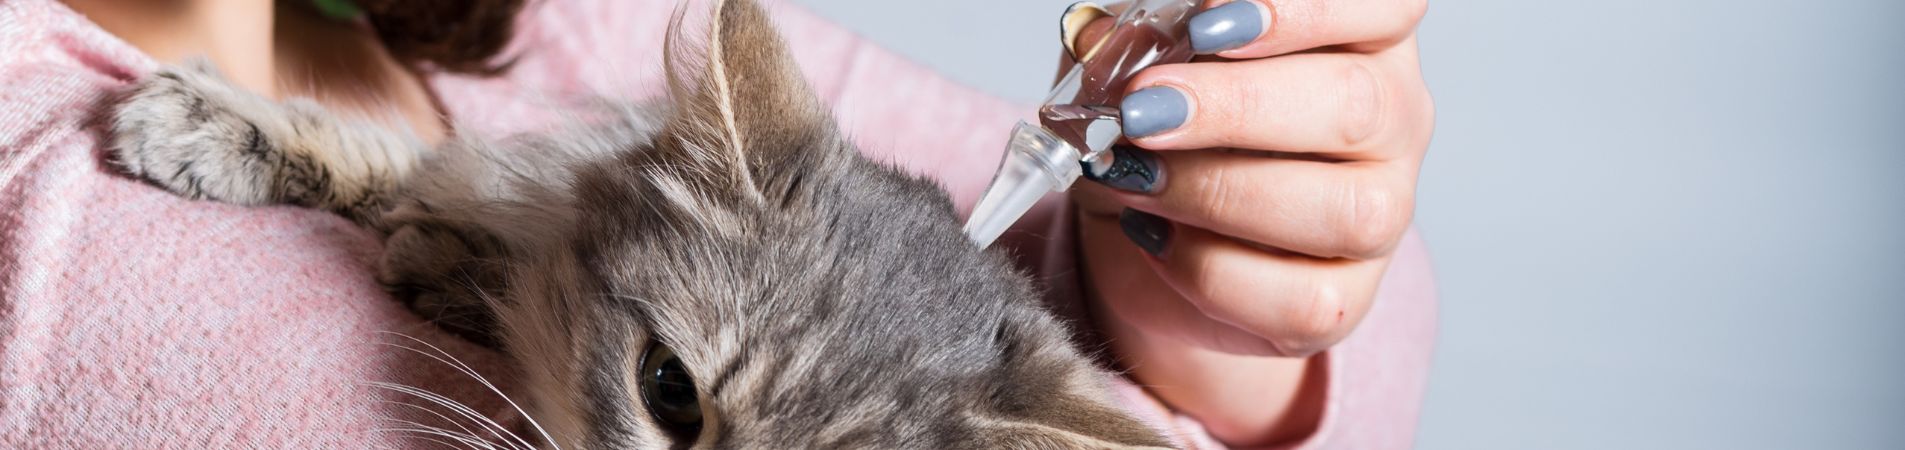 Une femme verse une pipette antiparasitaire dans le cou d'un chat